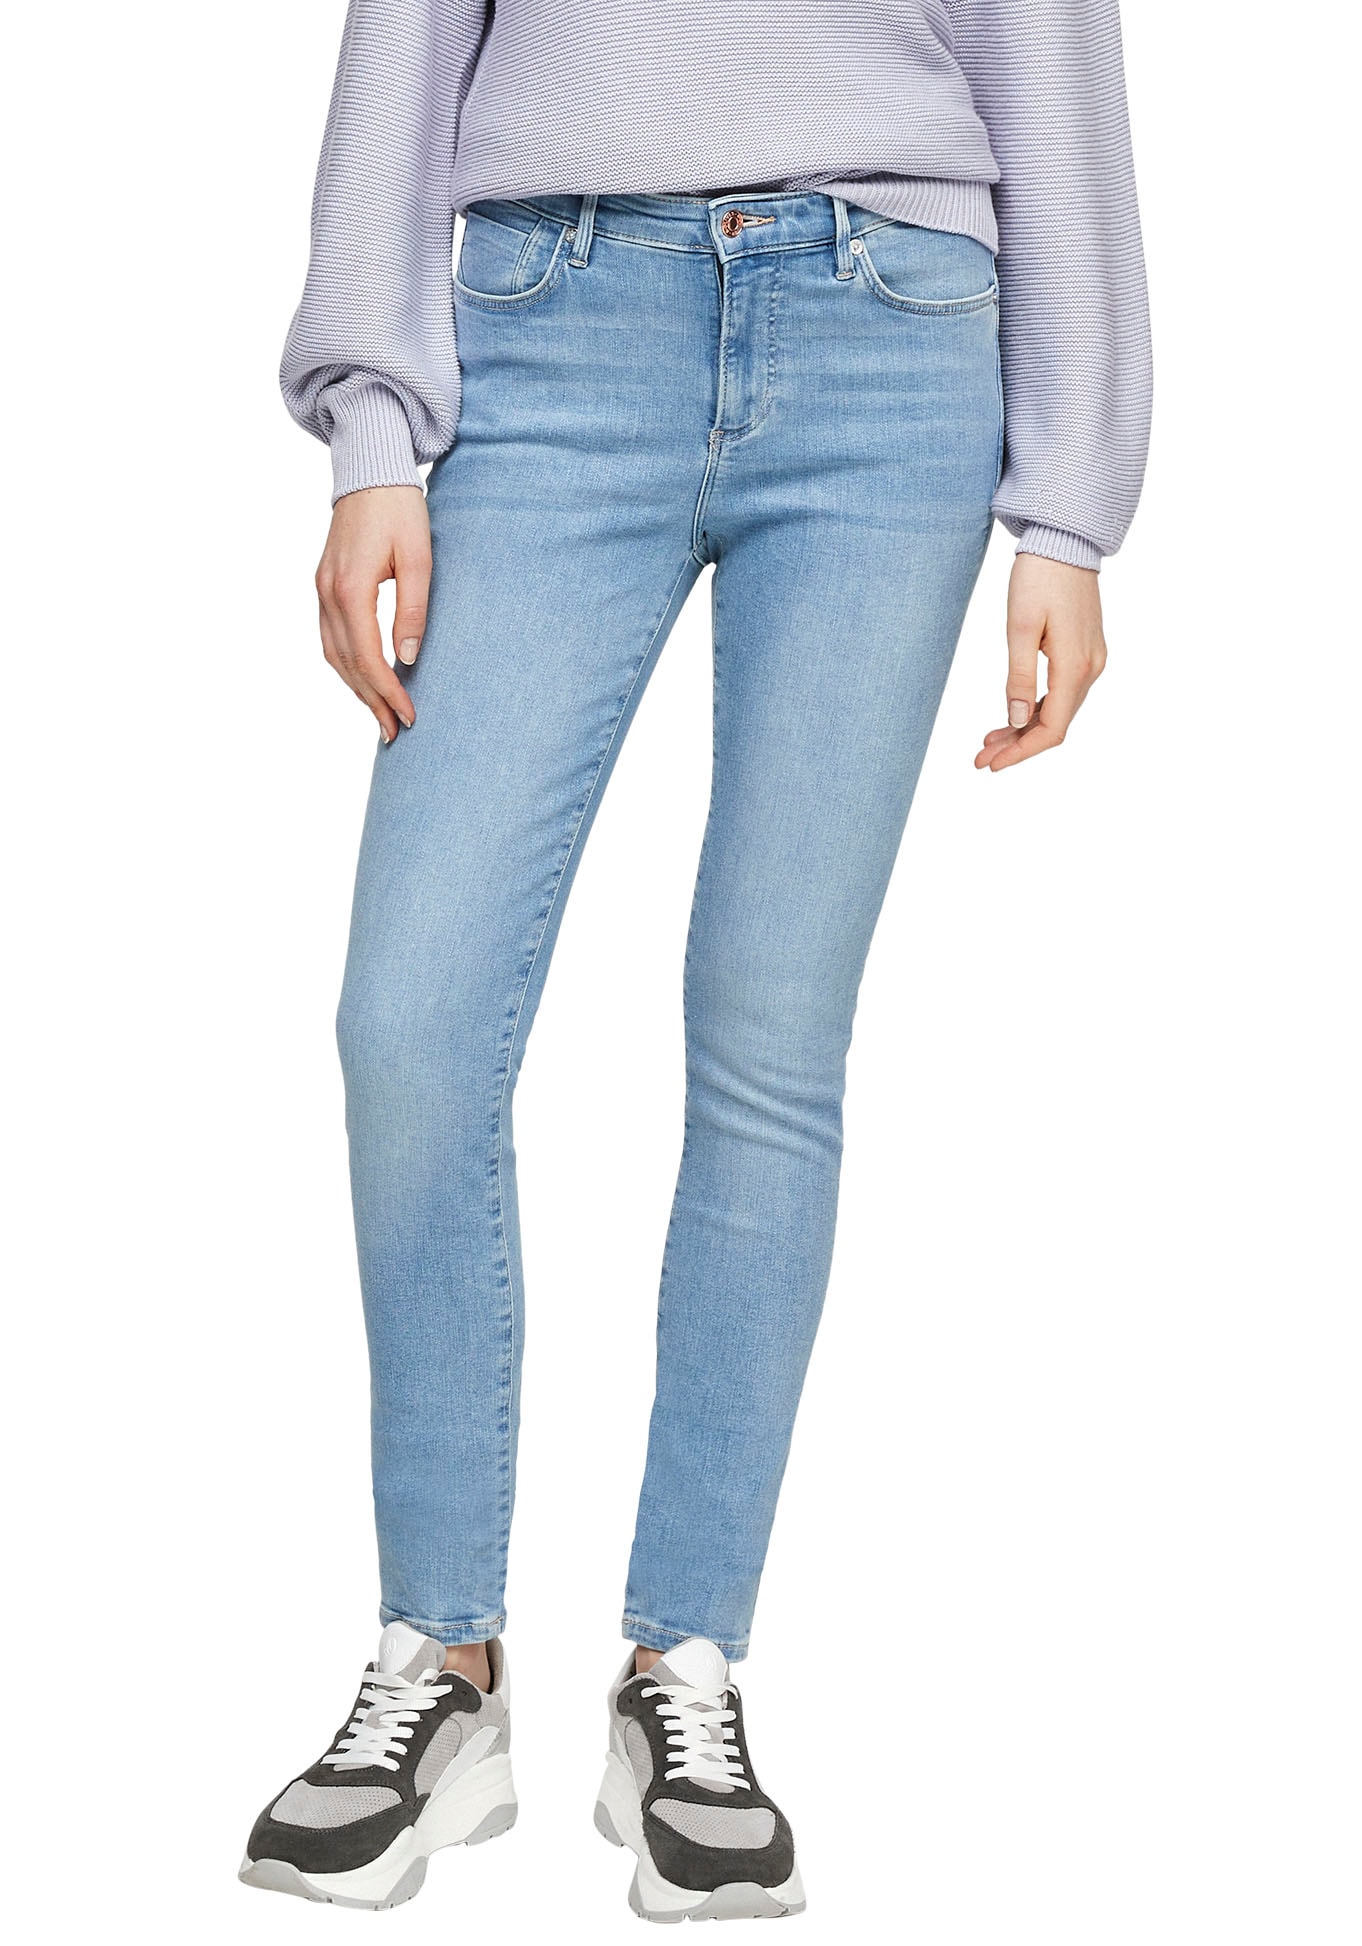 s.Oliver Skinny-fit-Jeans, in coolen, OTTOversand unterschiedlichen Waschungen bei